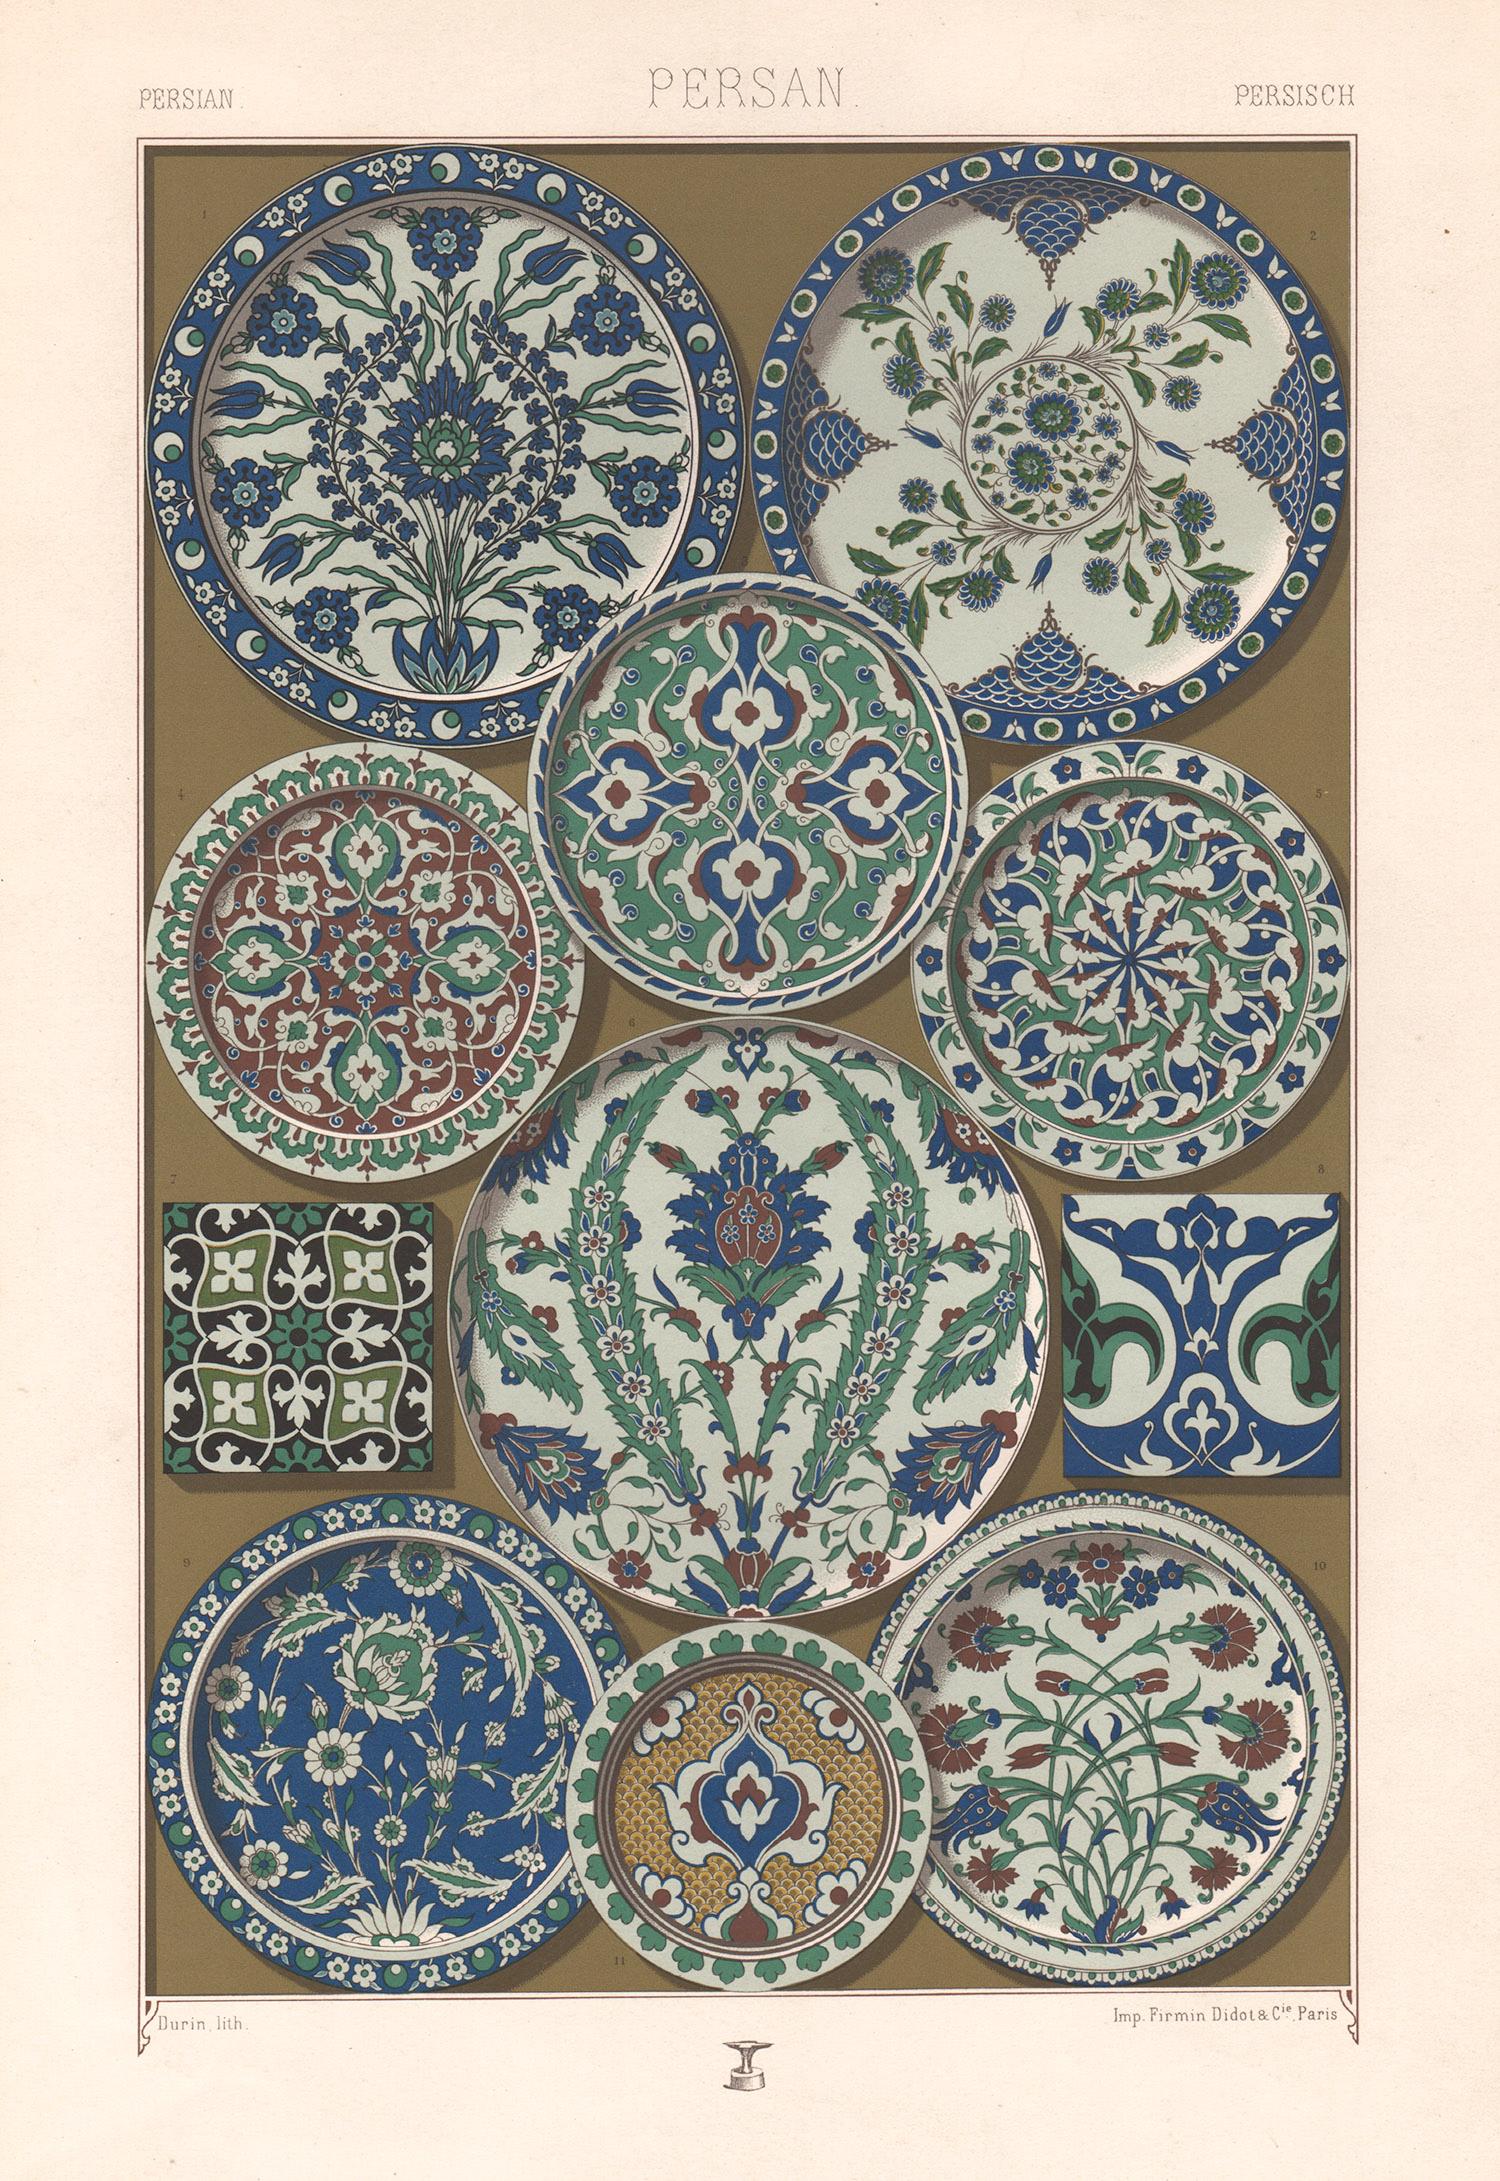 Albert-Charles-Auguste Racinet Abstract Print – Persischer, französischer, antiker Racinet-Kunstdesign-Lithographiendruck aus dem 19. Jahrhundert